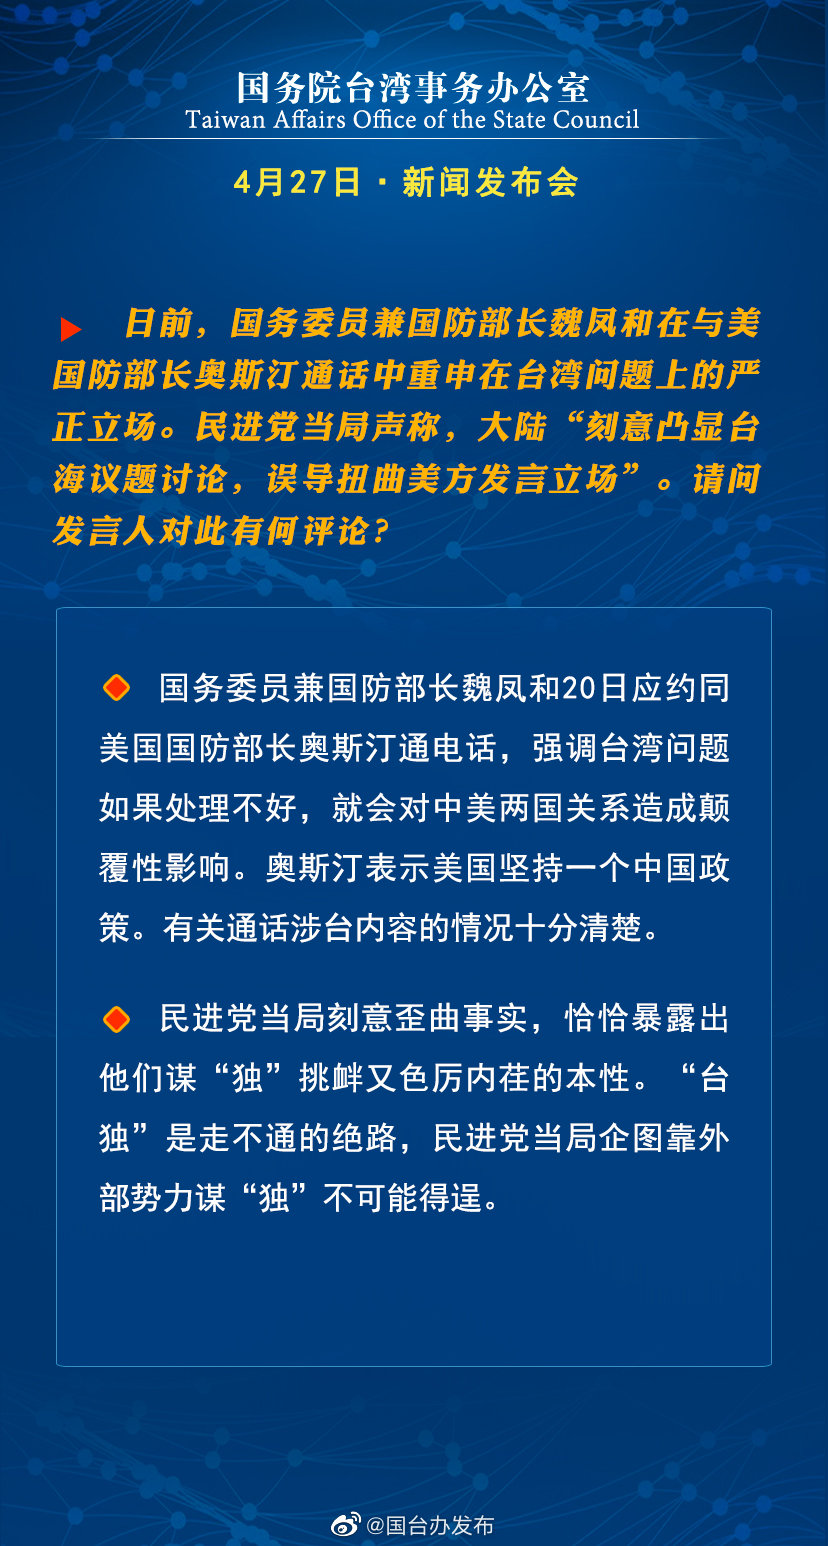 国务院台湾事务办公室4月27日·新闻发布会